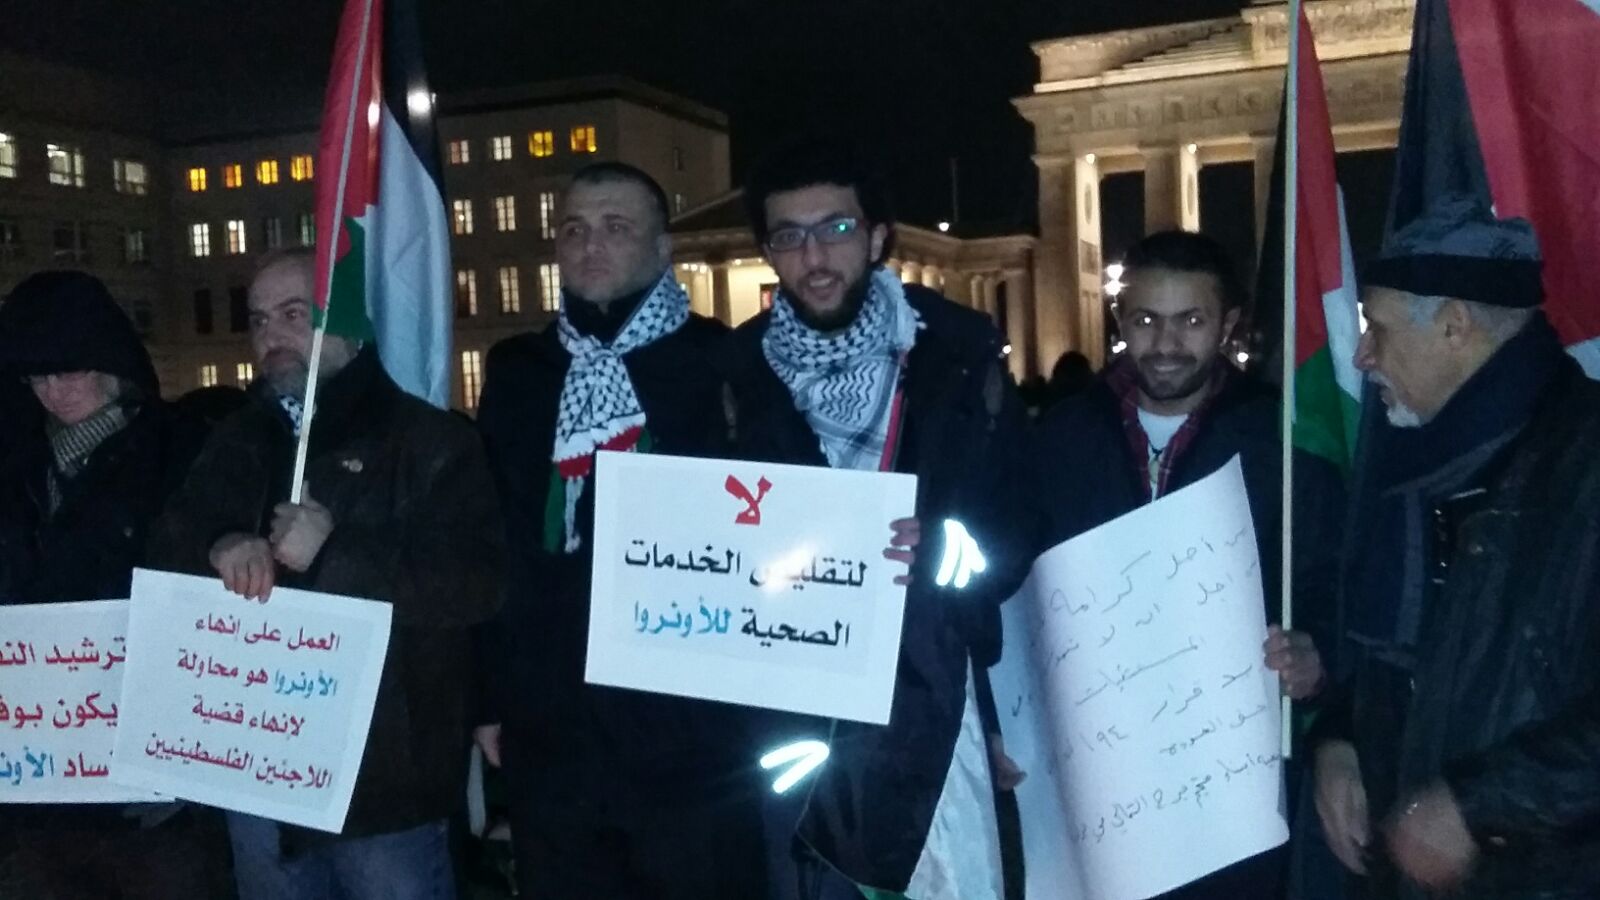 فلسطينيون وعرب في ألمانيا يرفضون تقليصات أونروا بلبنان